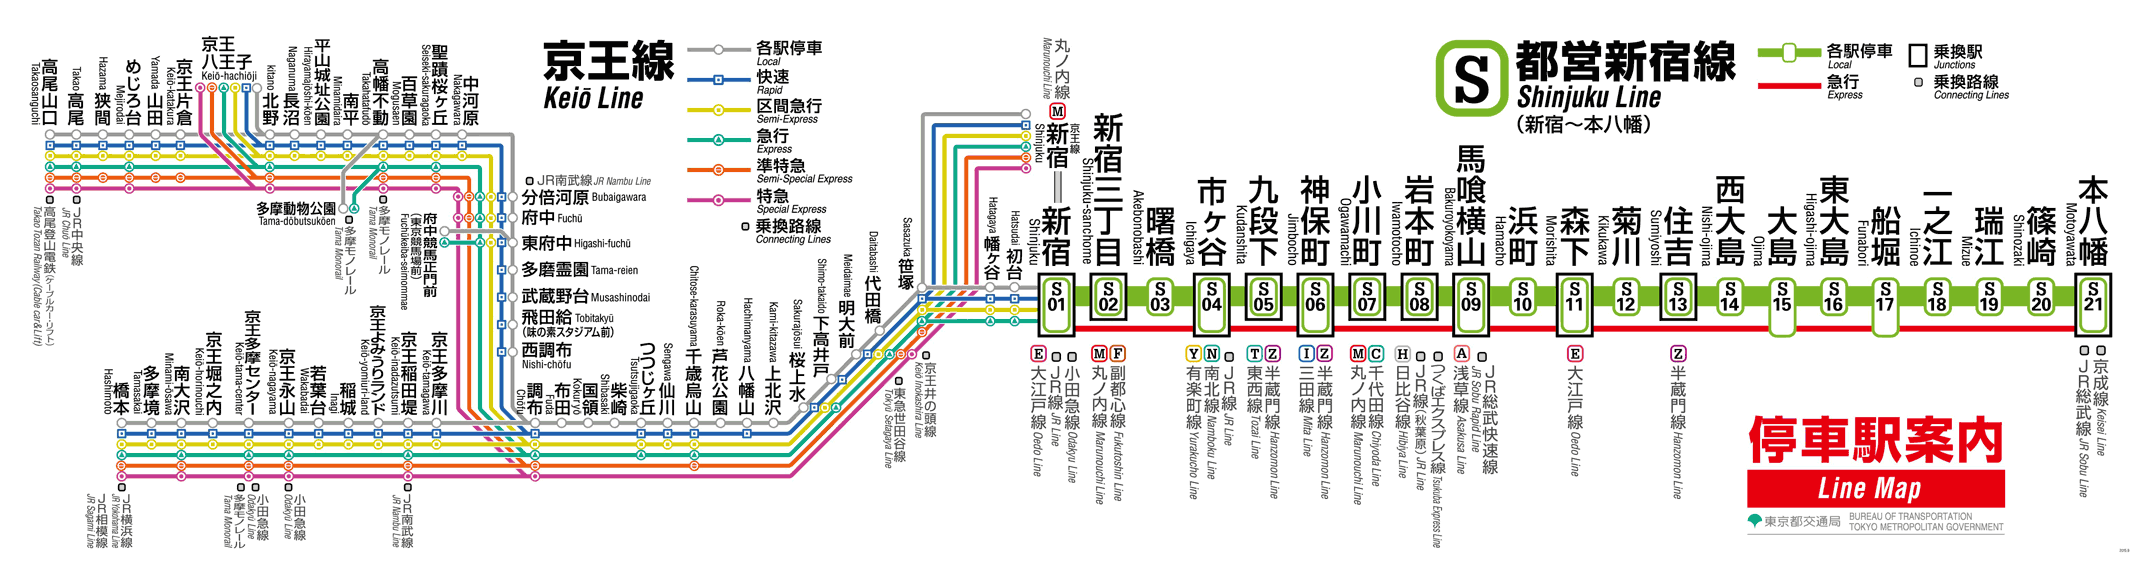 直通運轉是什麼 日本電車方便卻充滿陷阱的 直通運轉 窩日本wow Japan